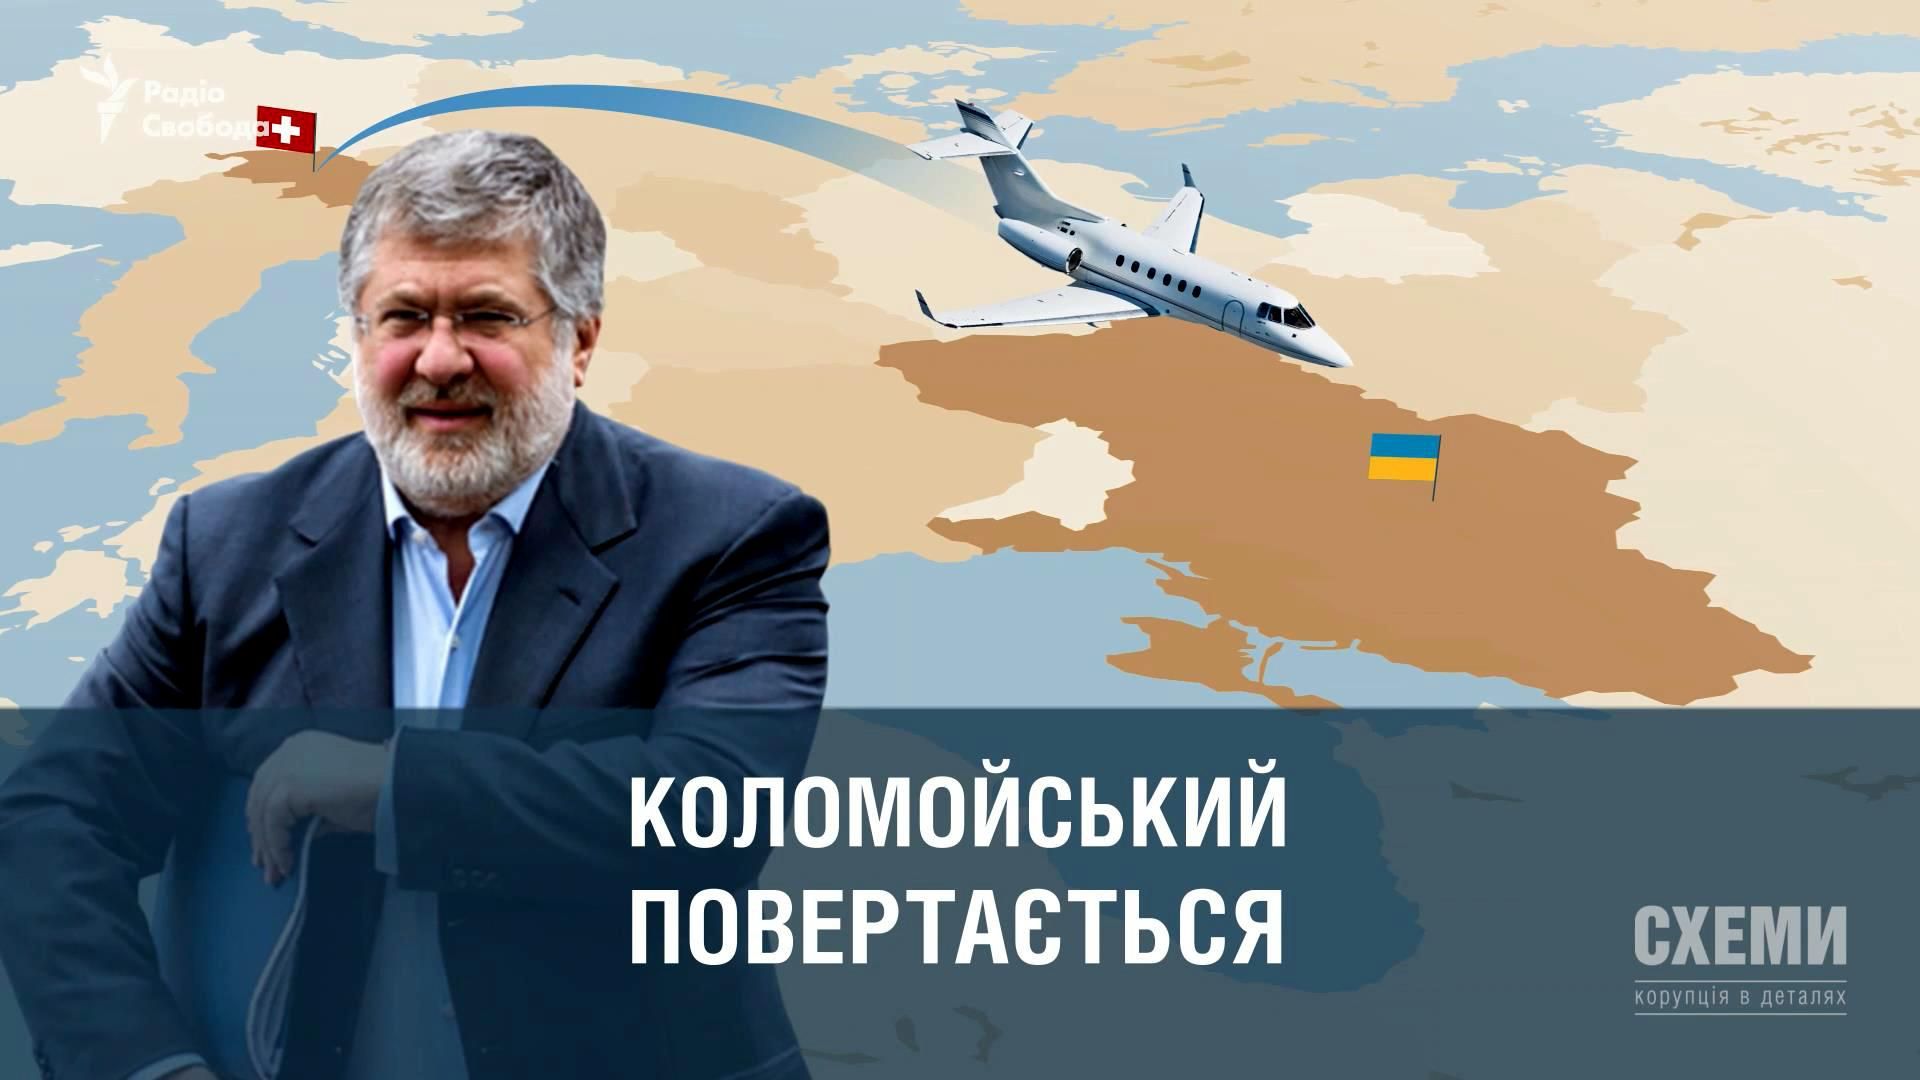 Що змусило Коломойського повернутися до України, попри "небезпеку" із боку влади